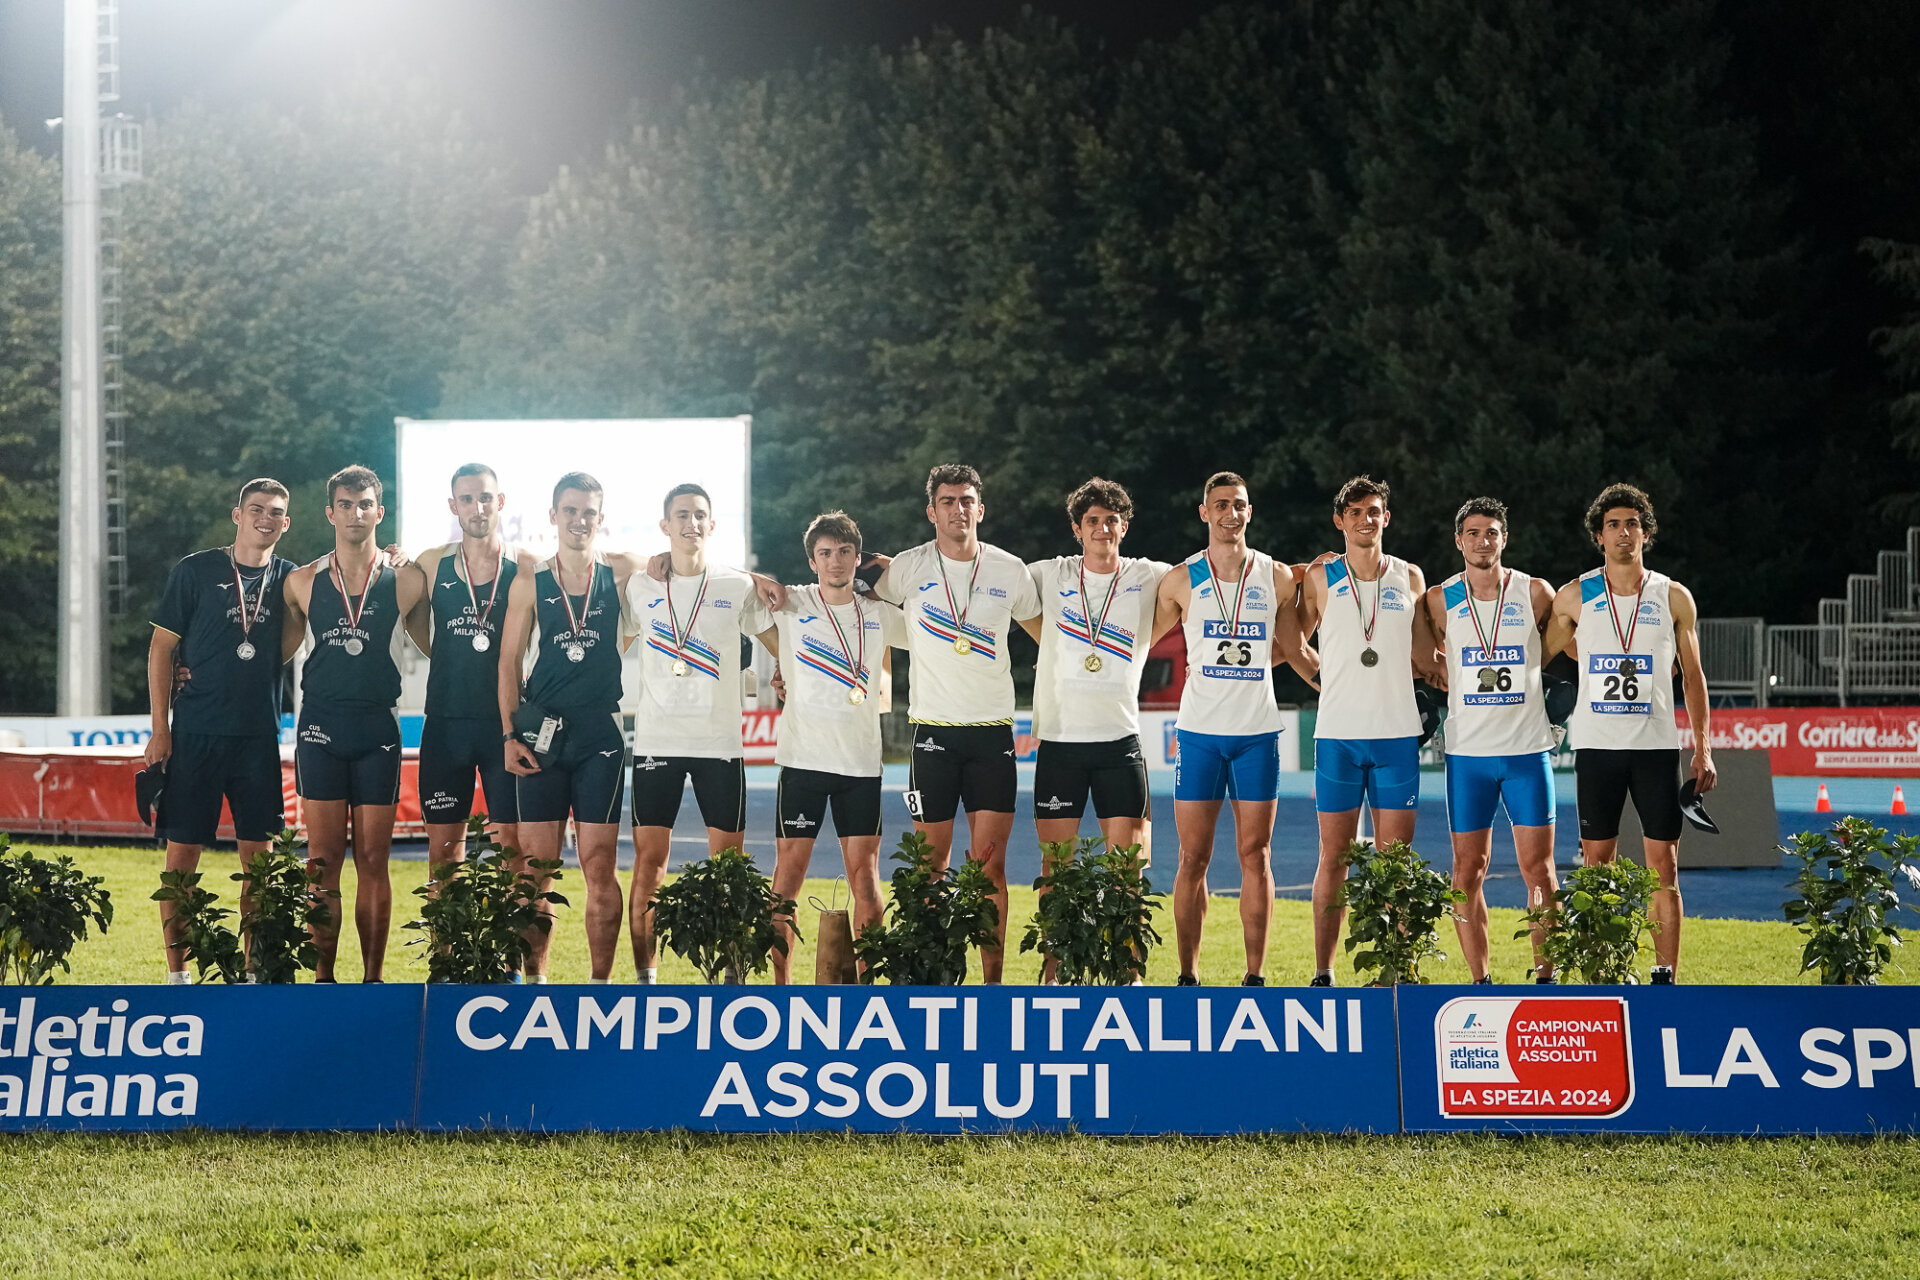 Campionati Italiani Assoluti 2024 | 28/29.06.2024, La Spezia, Campo Sportivo Montagna | Foto: Francesca Grana/FIDAL